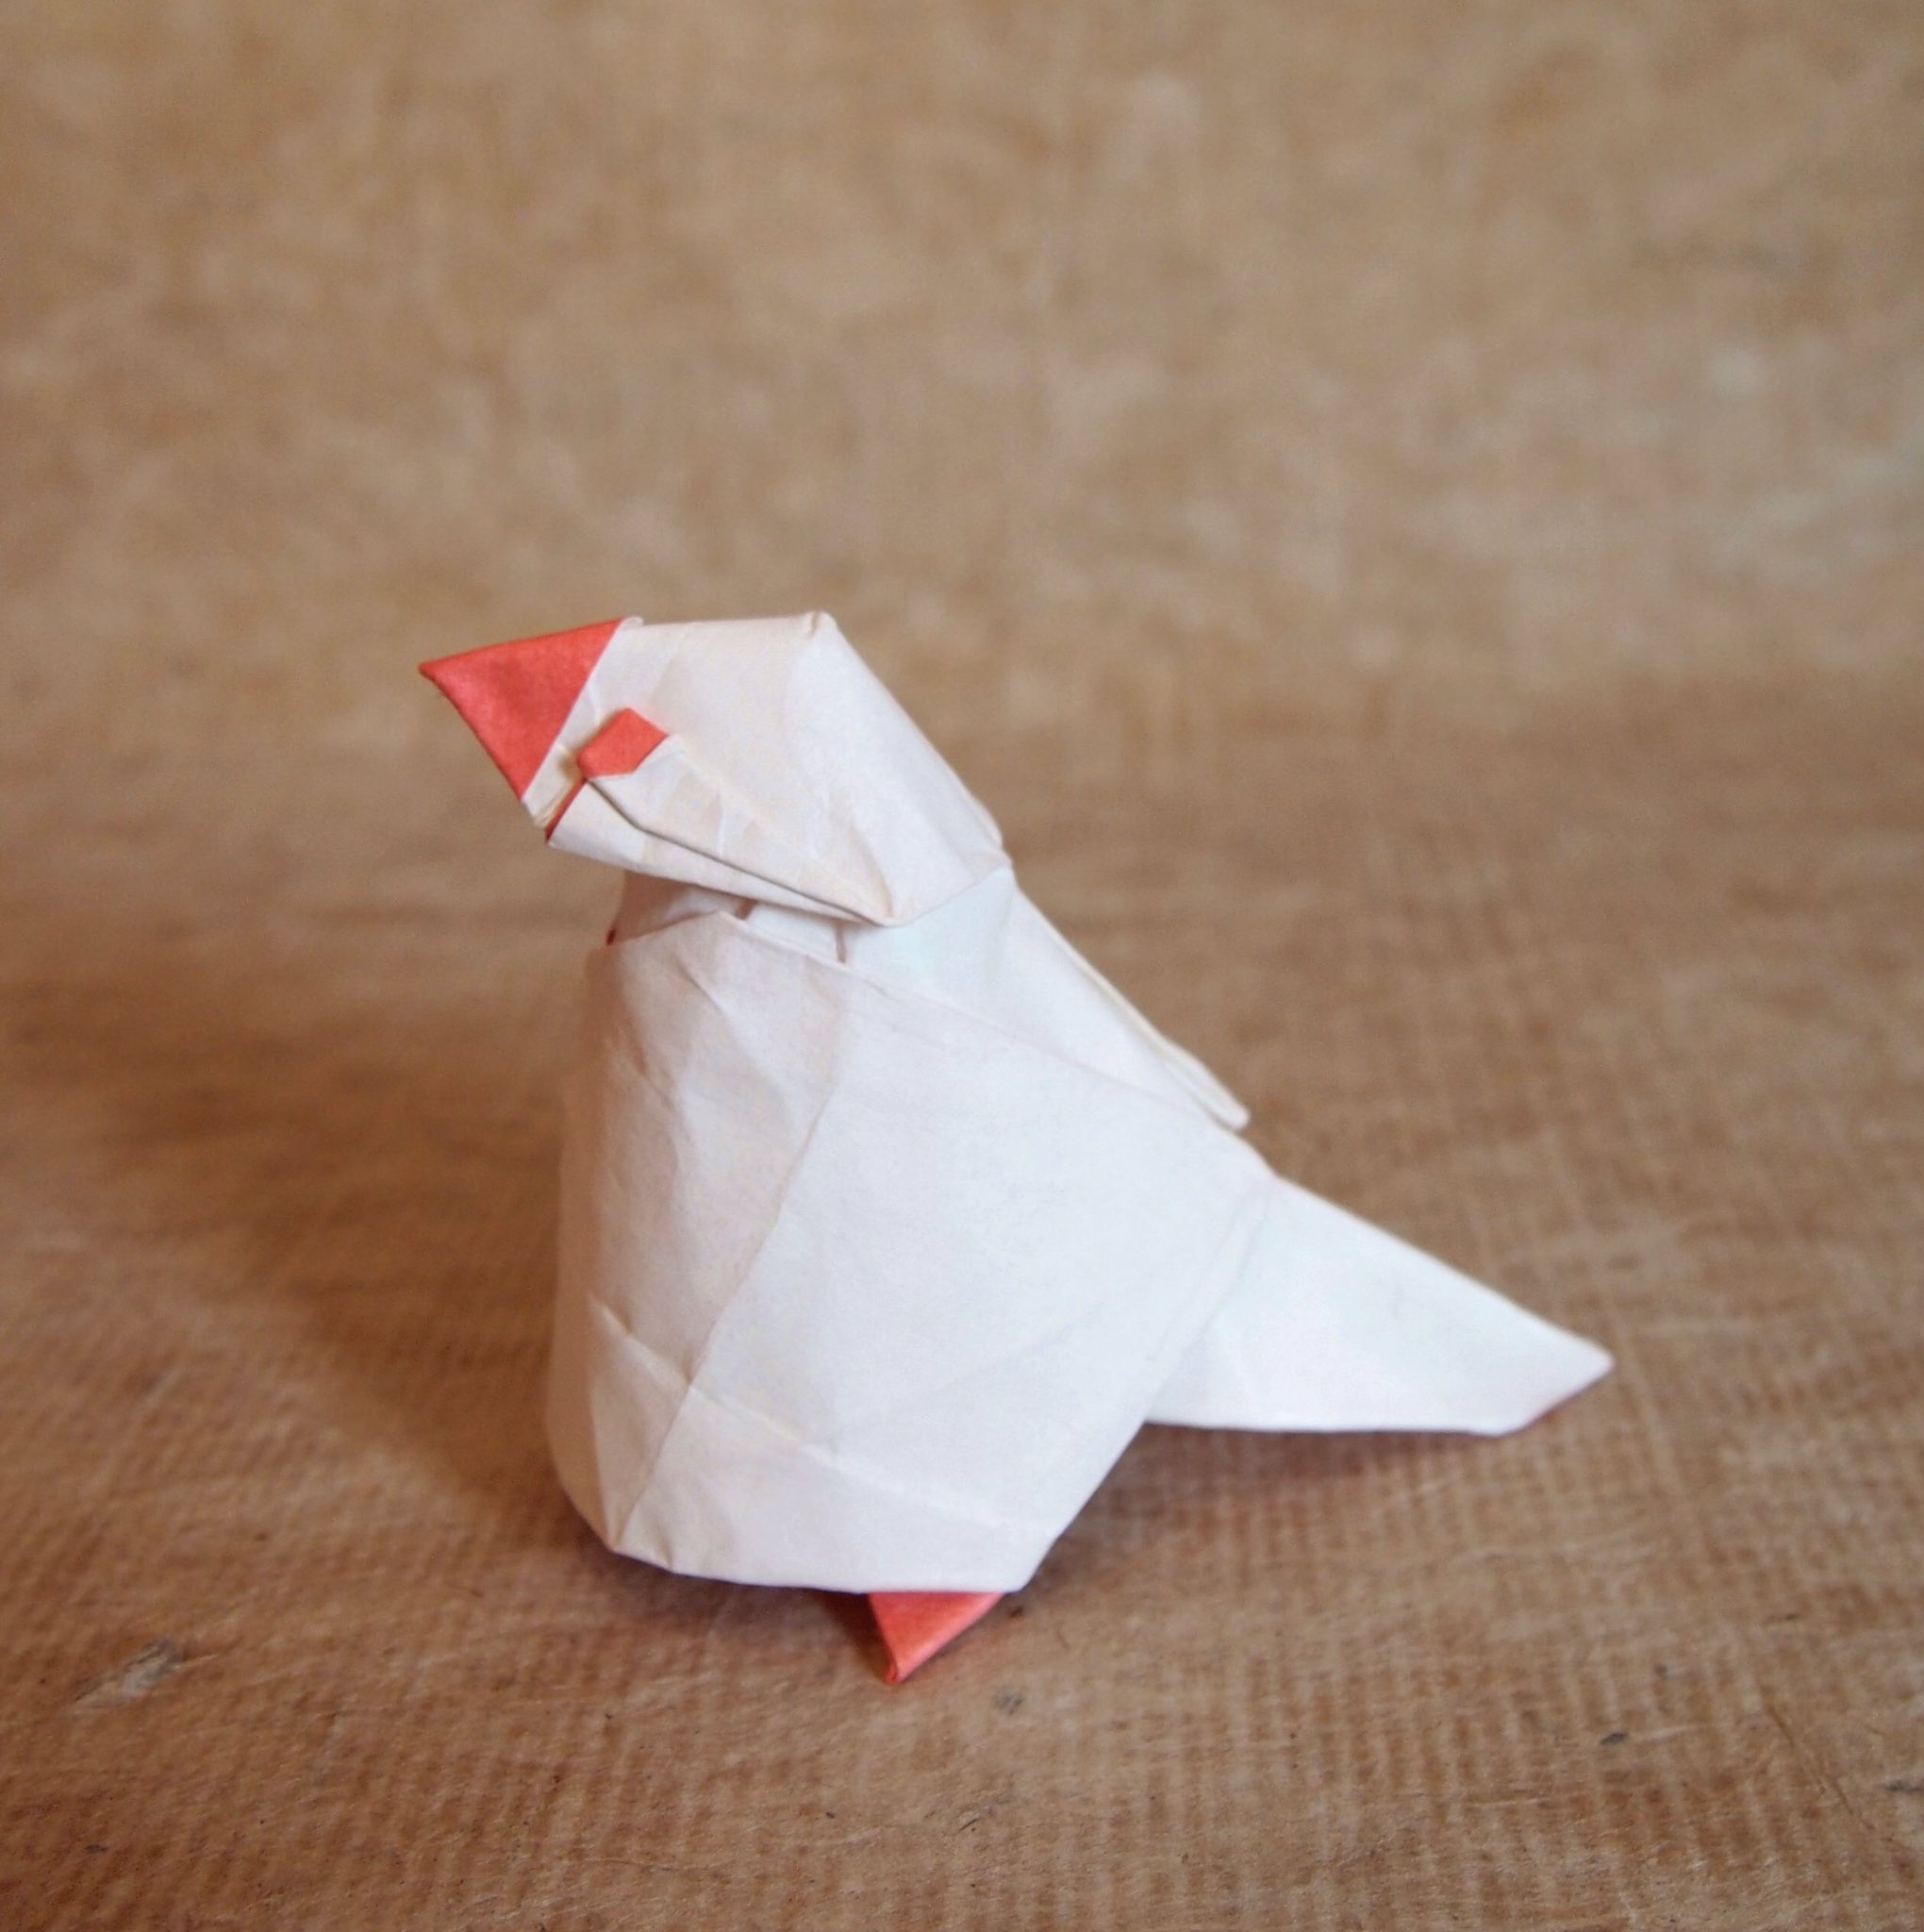 文鳥 In 折り紙作品 文鳥 創作 折り 一匹柴犬 正方形1枚折り 最近鳥しかできない Origami Bird 折り紙作品 折り紙 文鳥